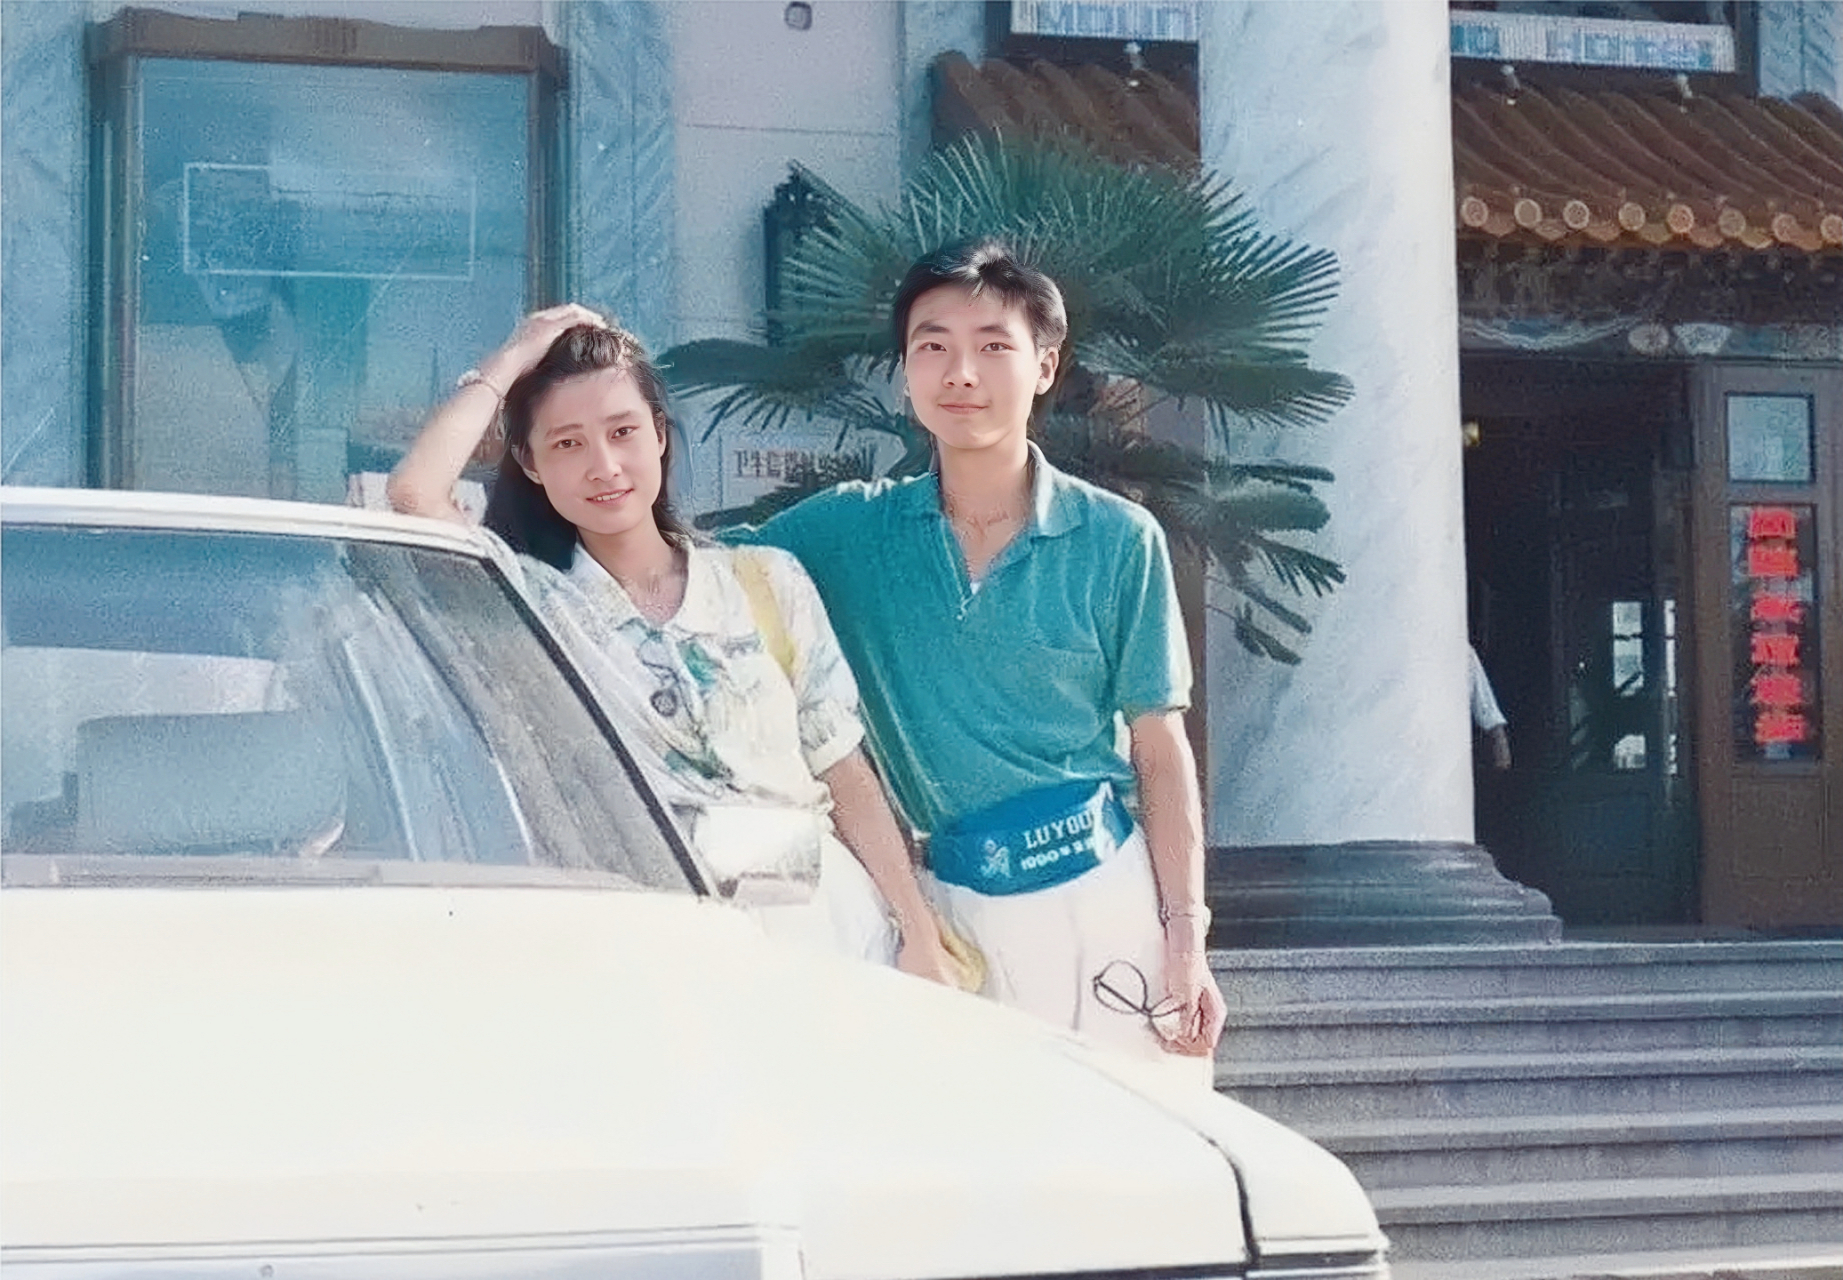 康辉年轻时和妻子刘雅洁的照片镜头下男帅女靓,十分养眼